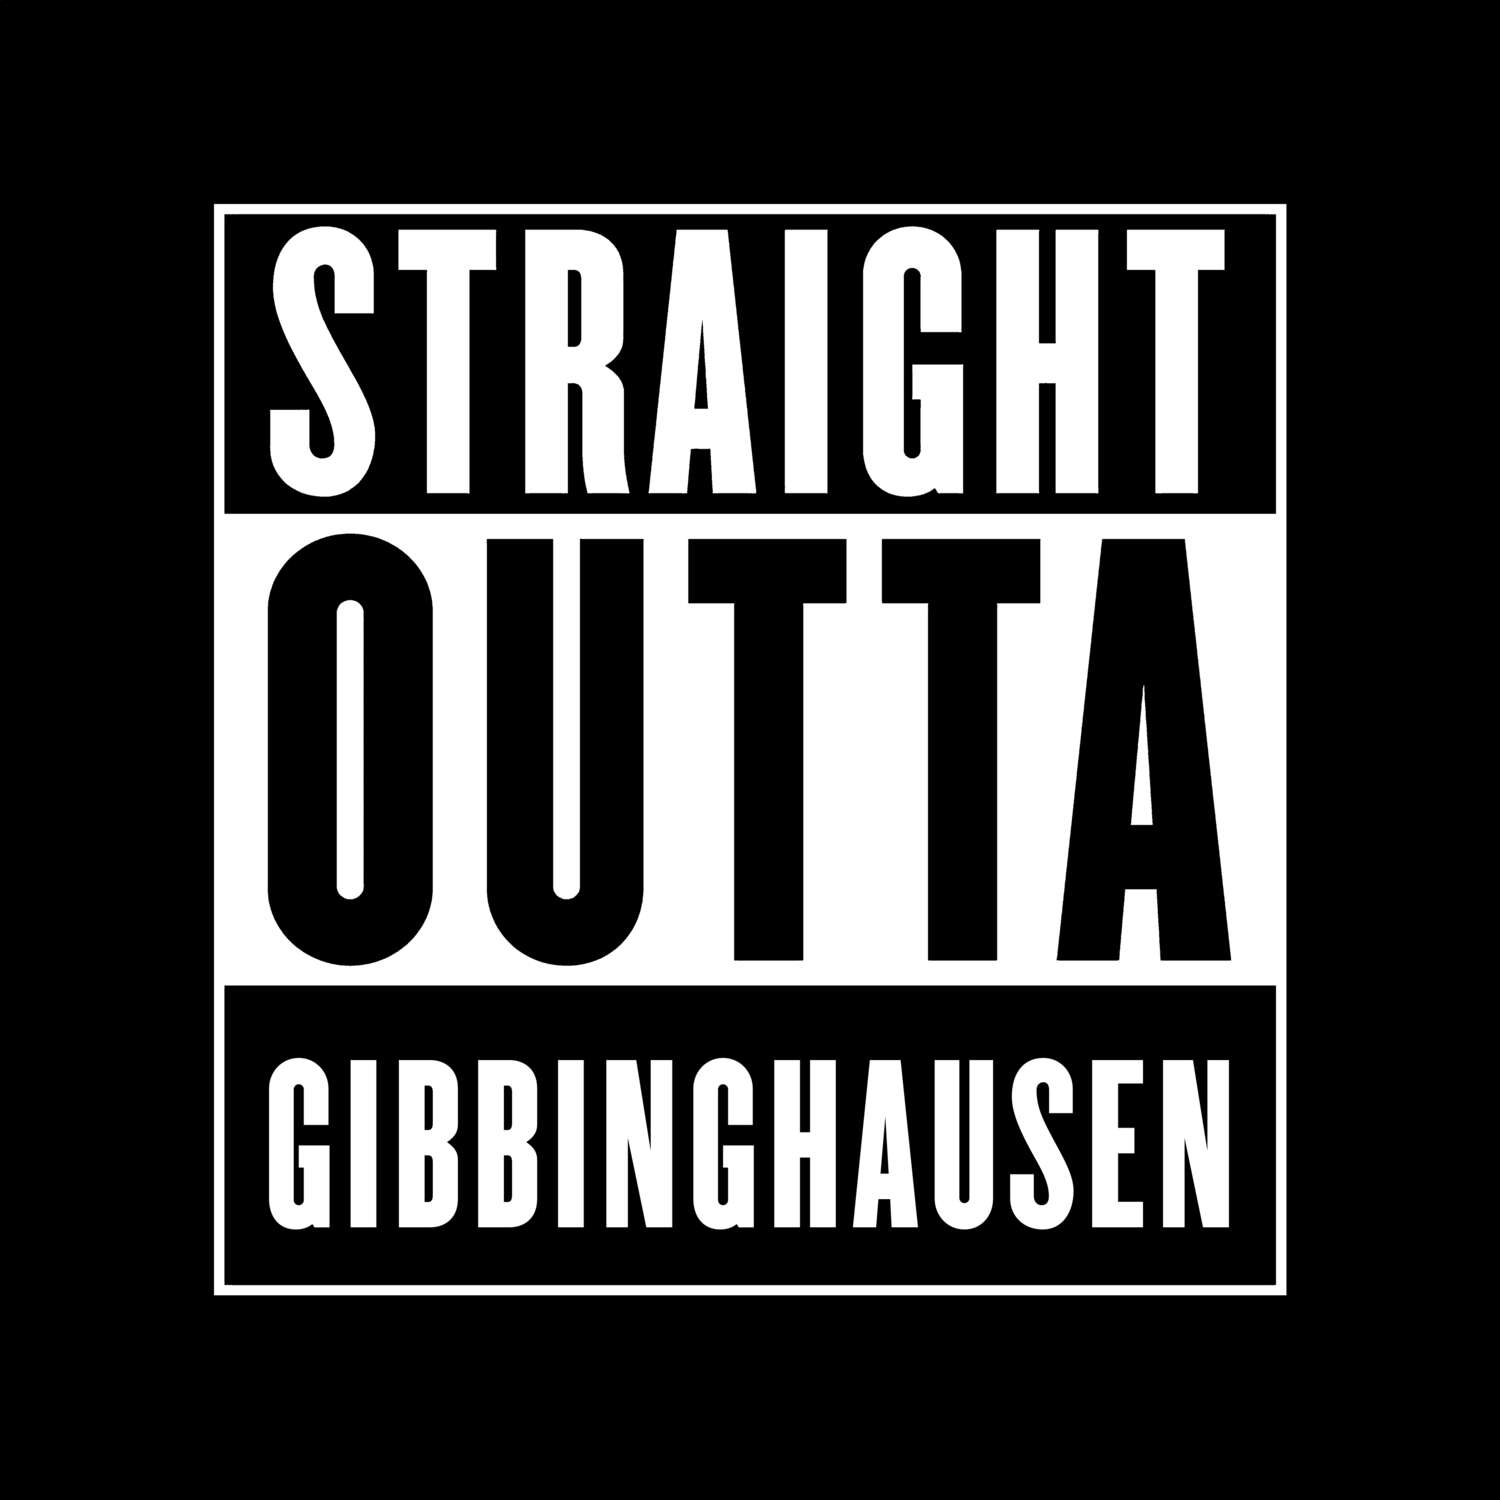 Gibbinghausen T-Shirt »Straight Outta«